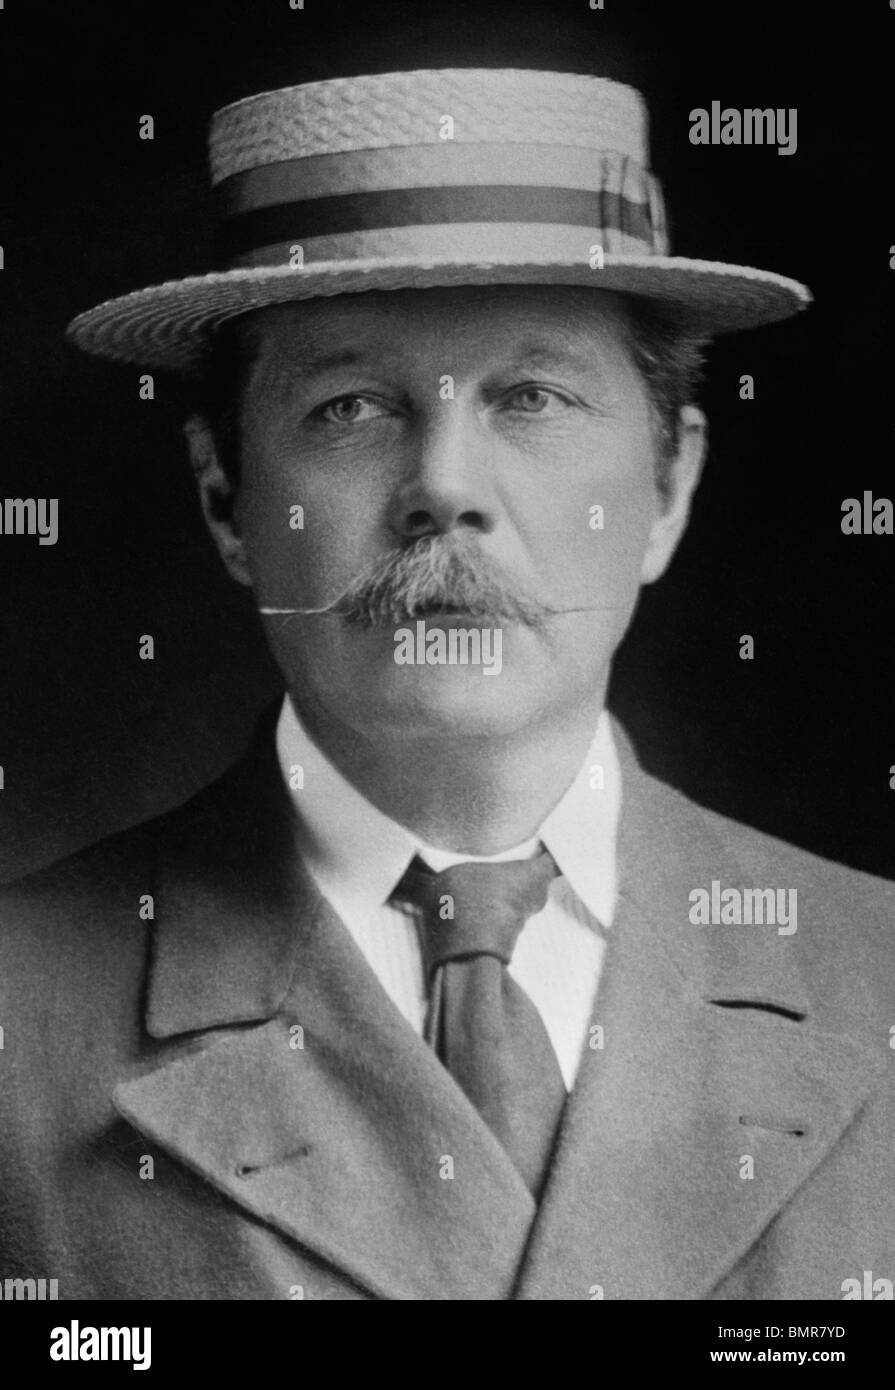 Porträt-Foto-1900 des schottischen Autors Sir Arthur Conan Doyle (1859-1930) - Schöpfer der fiktive Detektiv Sherlock Holmes. Stockfoto